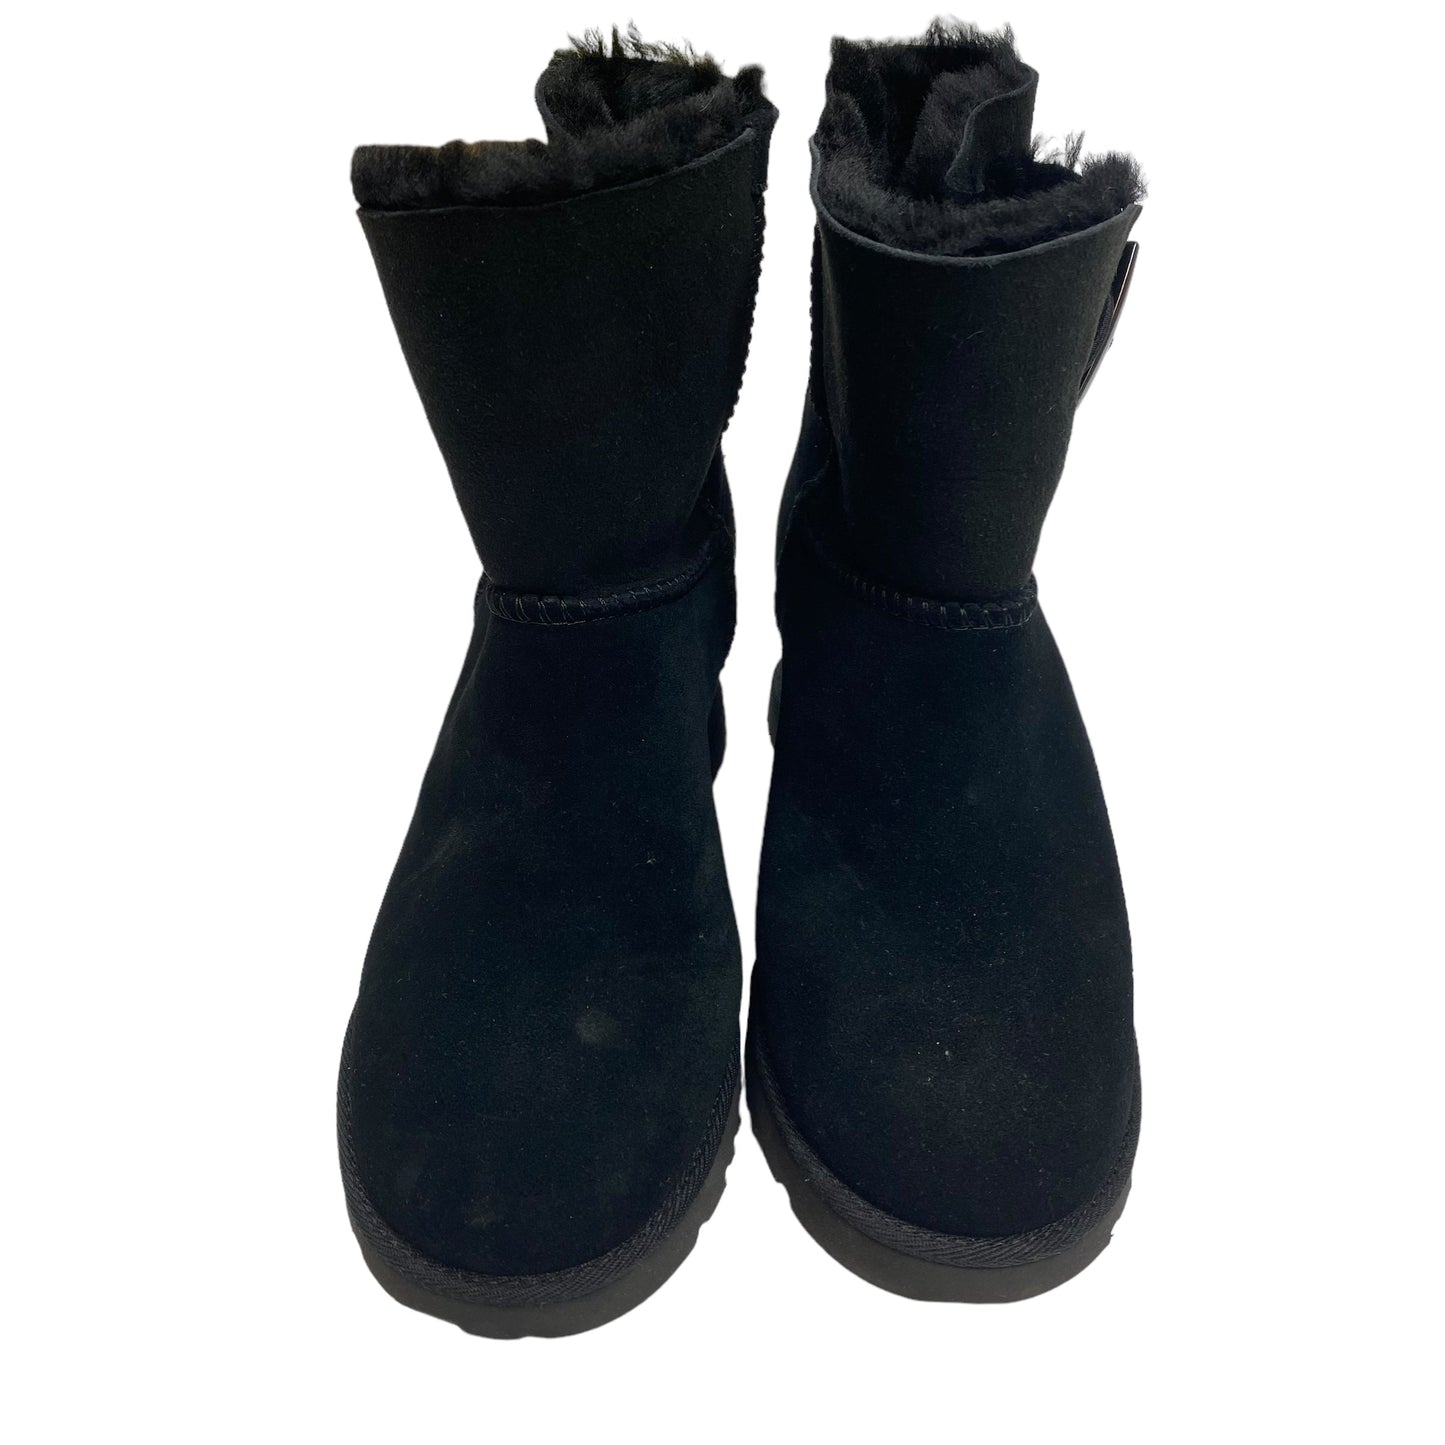 Black Boots Designer Ugg, Size 5